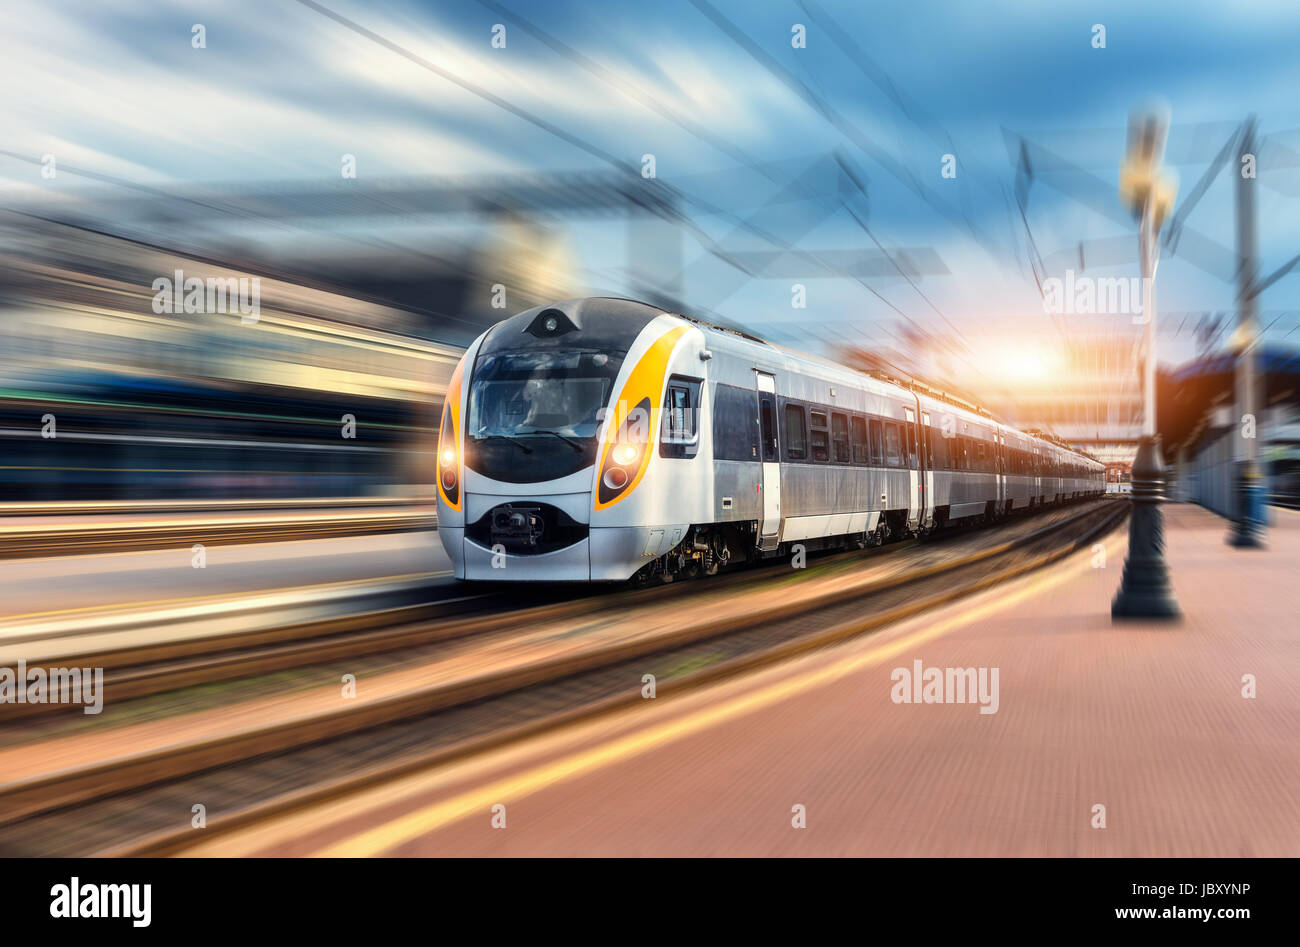 High-Speed-Zug in Bewegung am Bahnhof bei Sonnenuntergang. Moderne europäische intercity Zug auf dem Bahnsteig mit Motion-Blur-Effekt. Industri Stockfoto